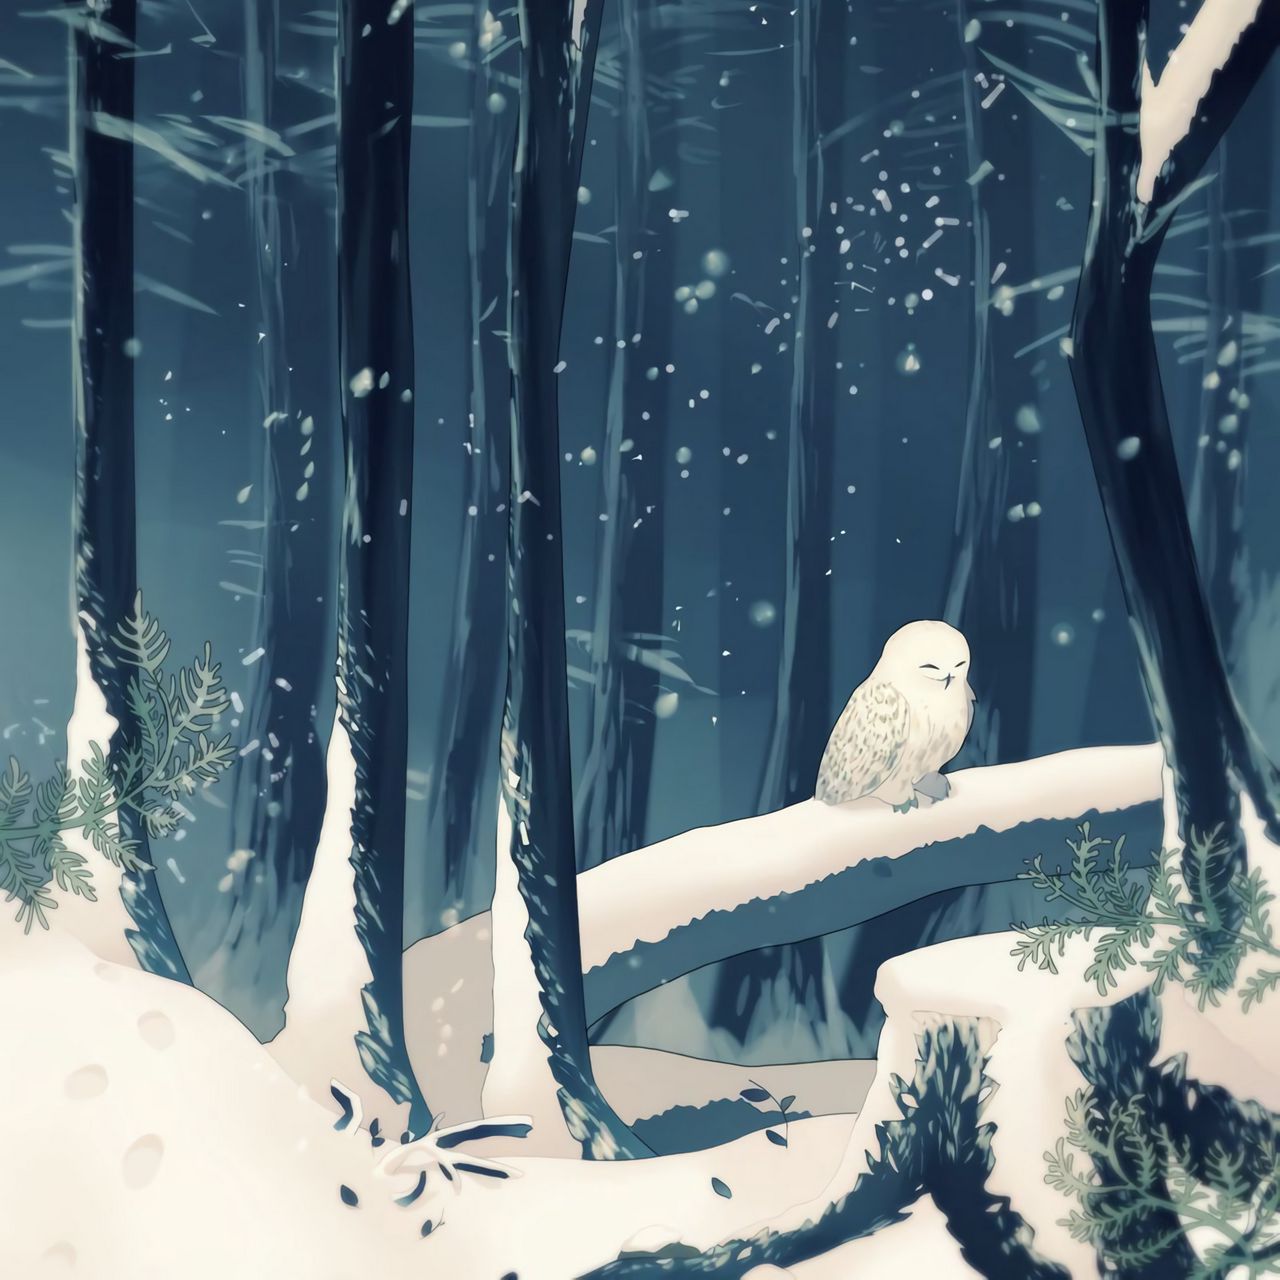 Download wallpaper 1280x1280 forest, owl, art, snow, winter ipad, ipad ipad mini for parallax HD background